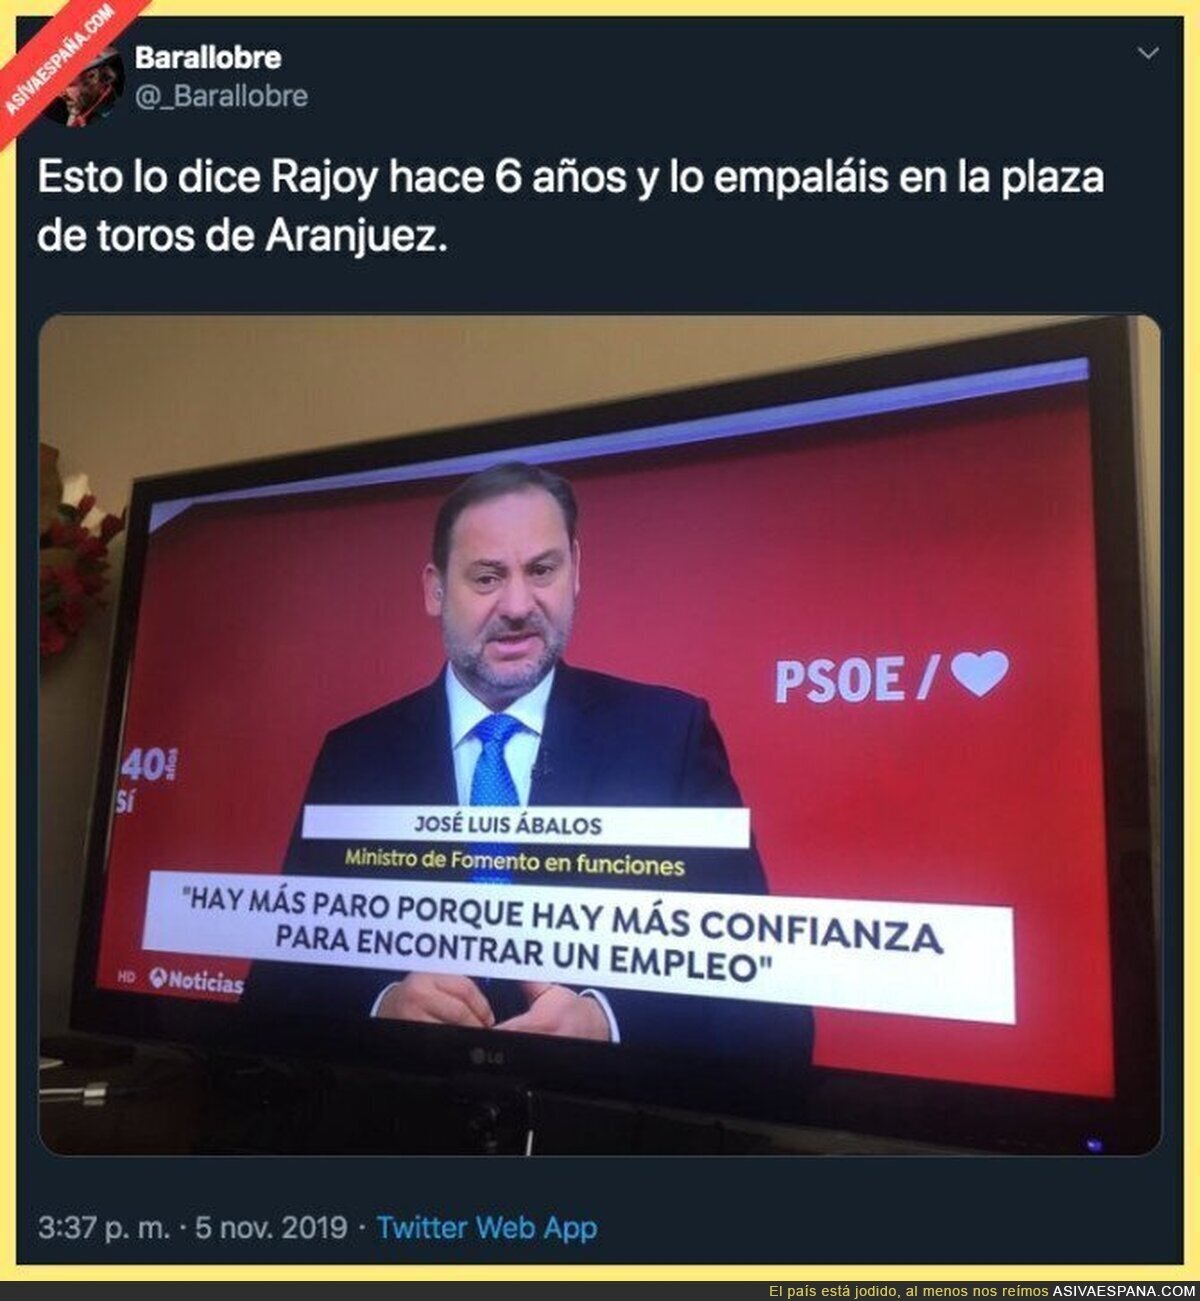 La razón por la que hay más paro según el PSOE